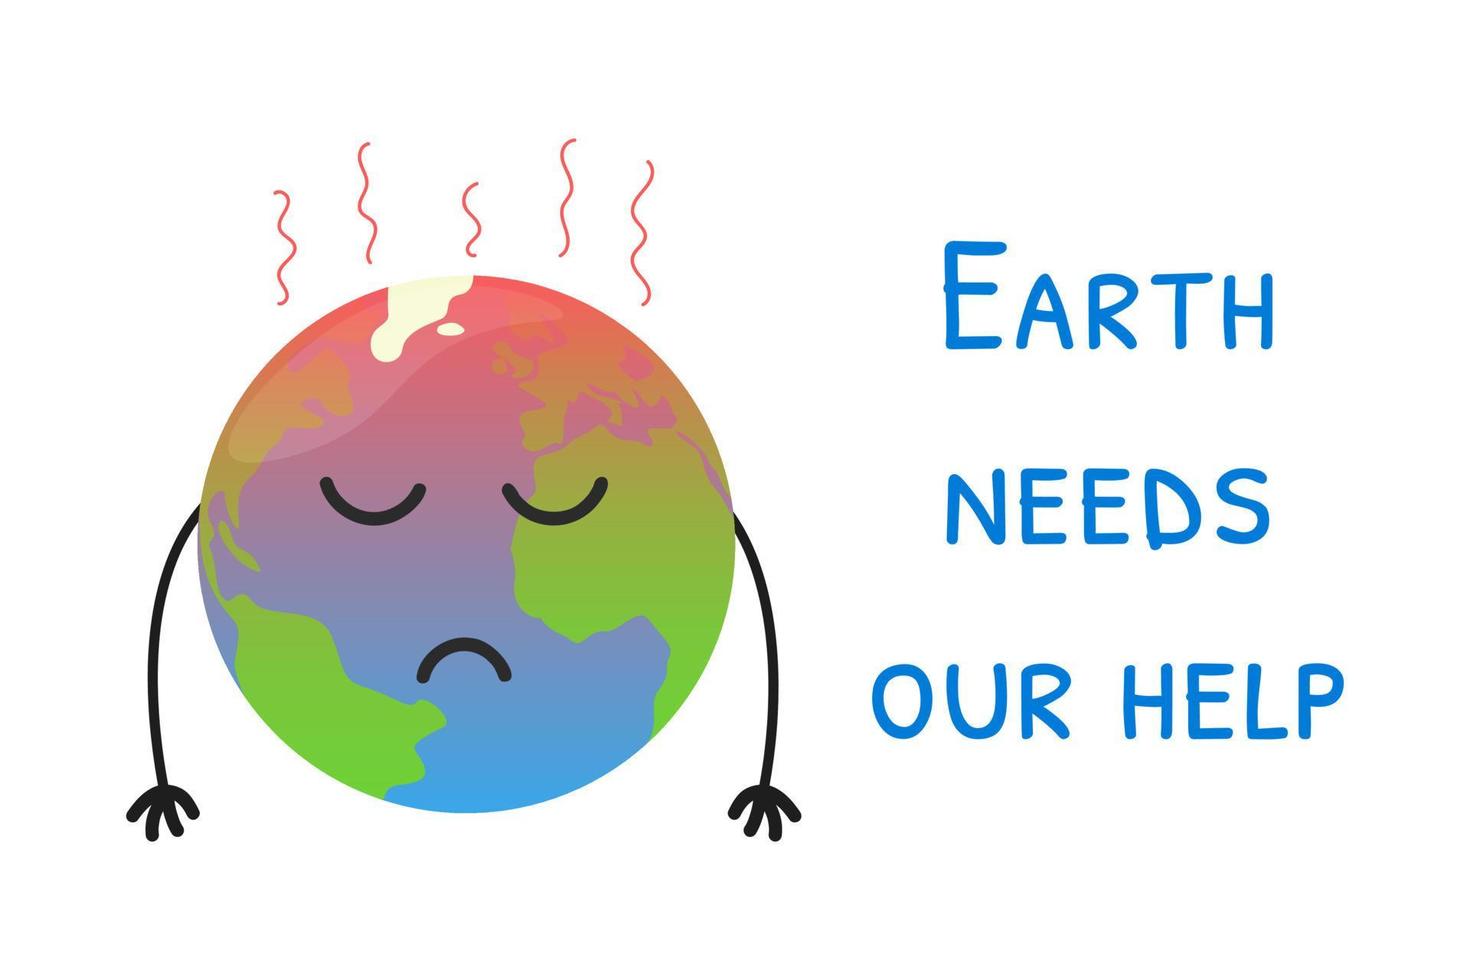 concepto de calentamiento global. El planeta tierra de dibujos animados caliente está triste con las manos hacia abajo. cartel de protección del medio ambiente. vector ilustración aislada